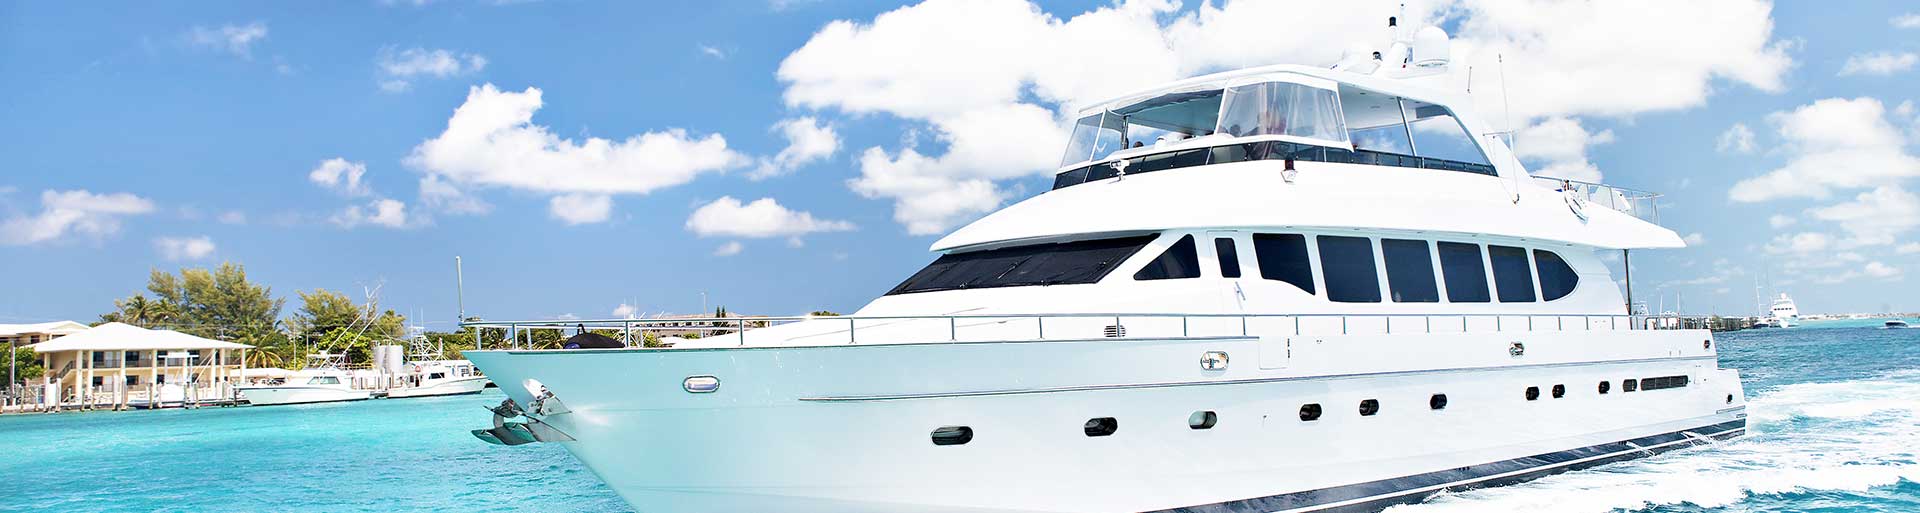 Mieten Sie bei uns ein Boot - Traum Urlaub Florida